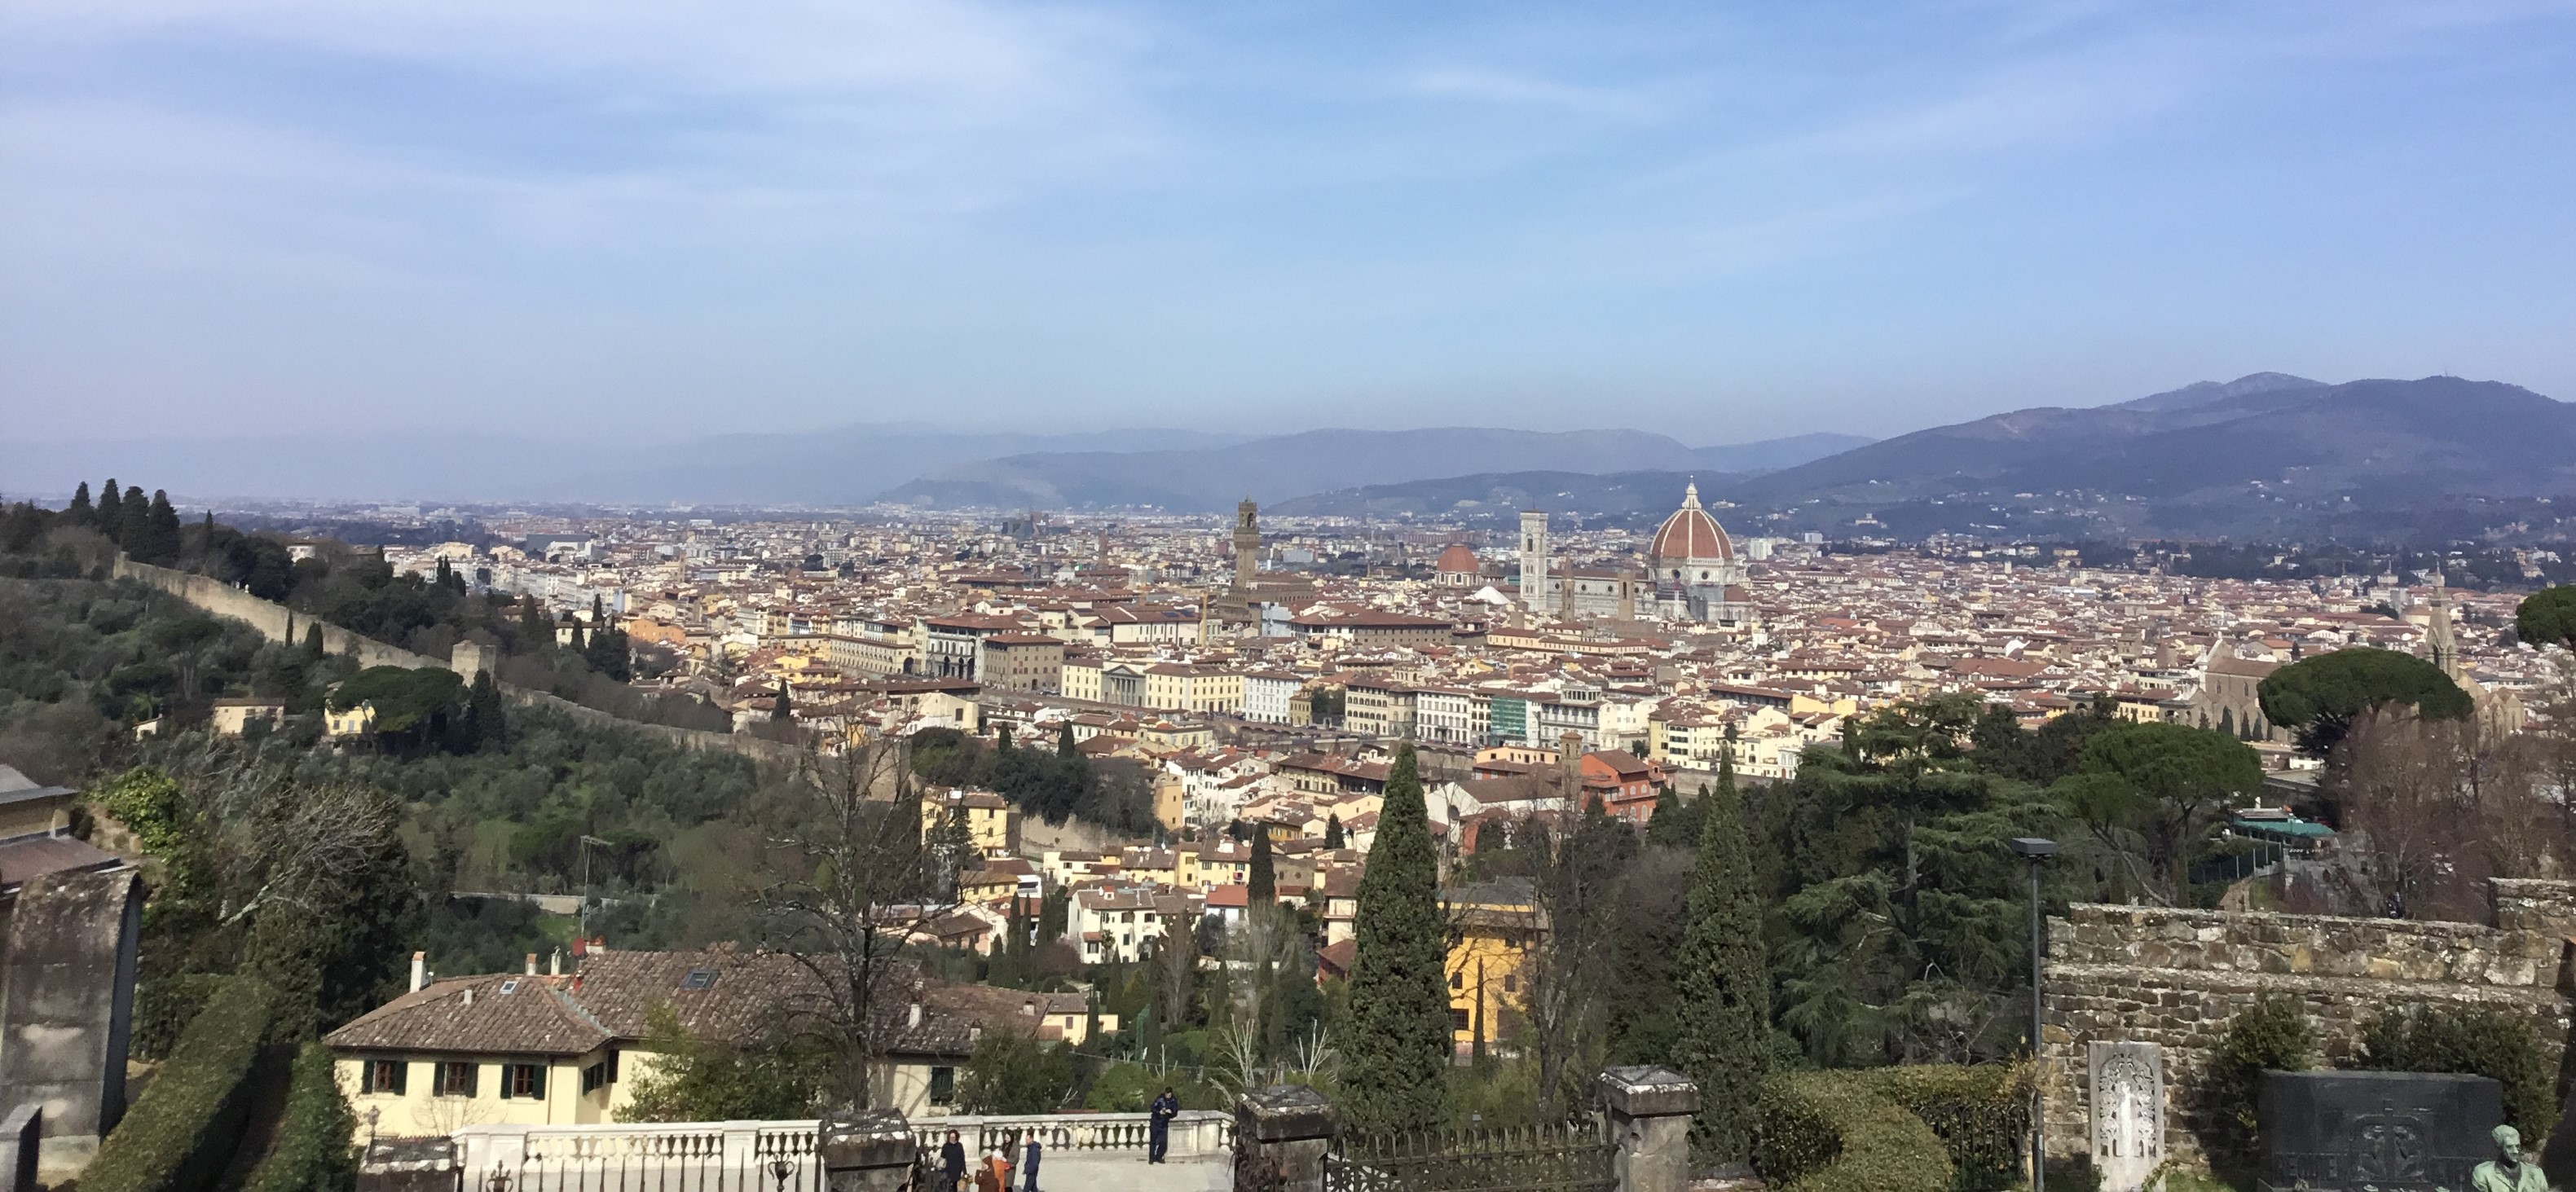 Veduta di Firenze da San Miniato al Monte – Foto Giornalista Franco Mariani 18 mar 2022 (1)